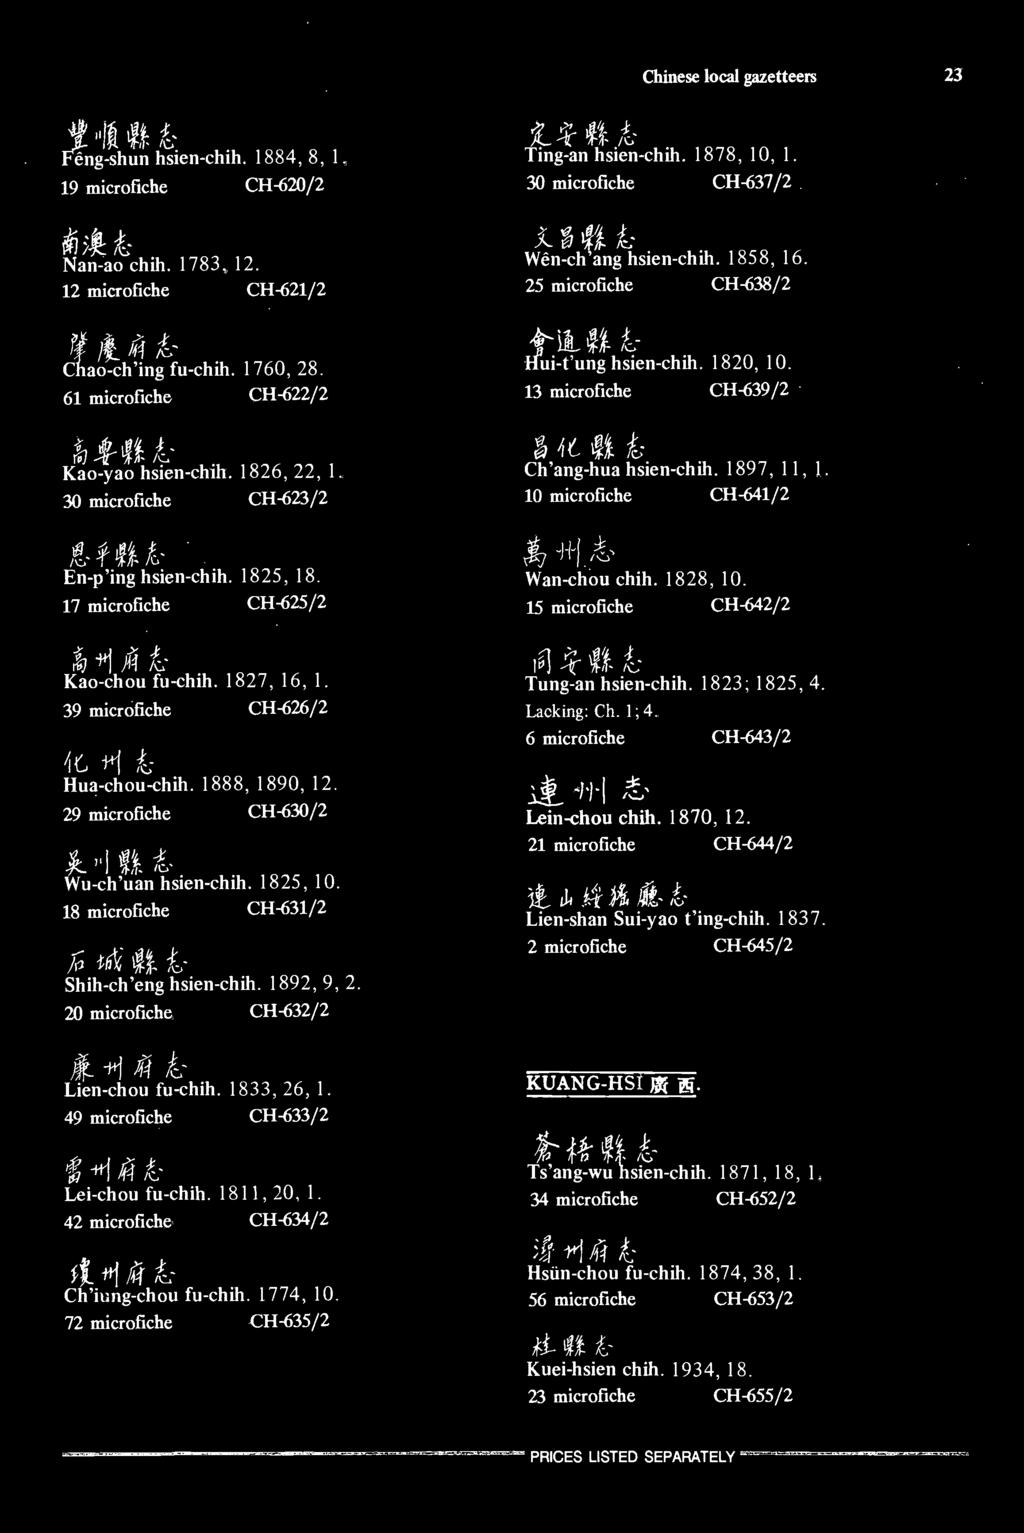 39 microfiche CH-626/2 39 microfiche CH-626/2 i6 +1 k; Hua-chou-chih. 1888, 1890, 12. Hua-chou^chih. 1888, 1890, 12. 29 microfiche CH-630/2 Wu-ch'uan r hsien-chih. 1825, 10.